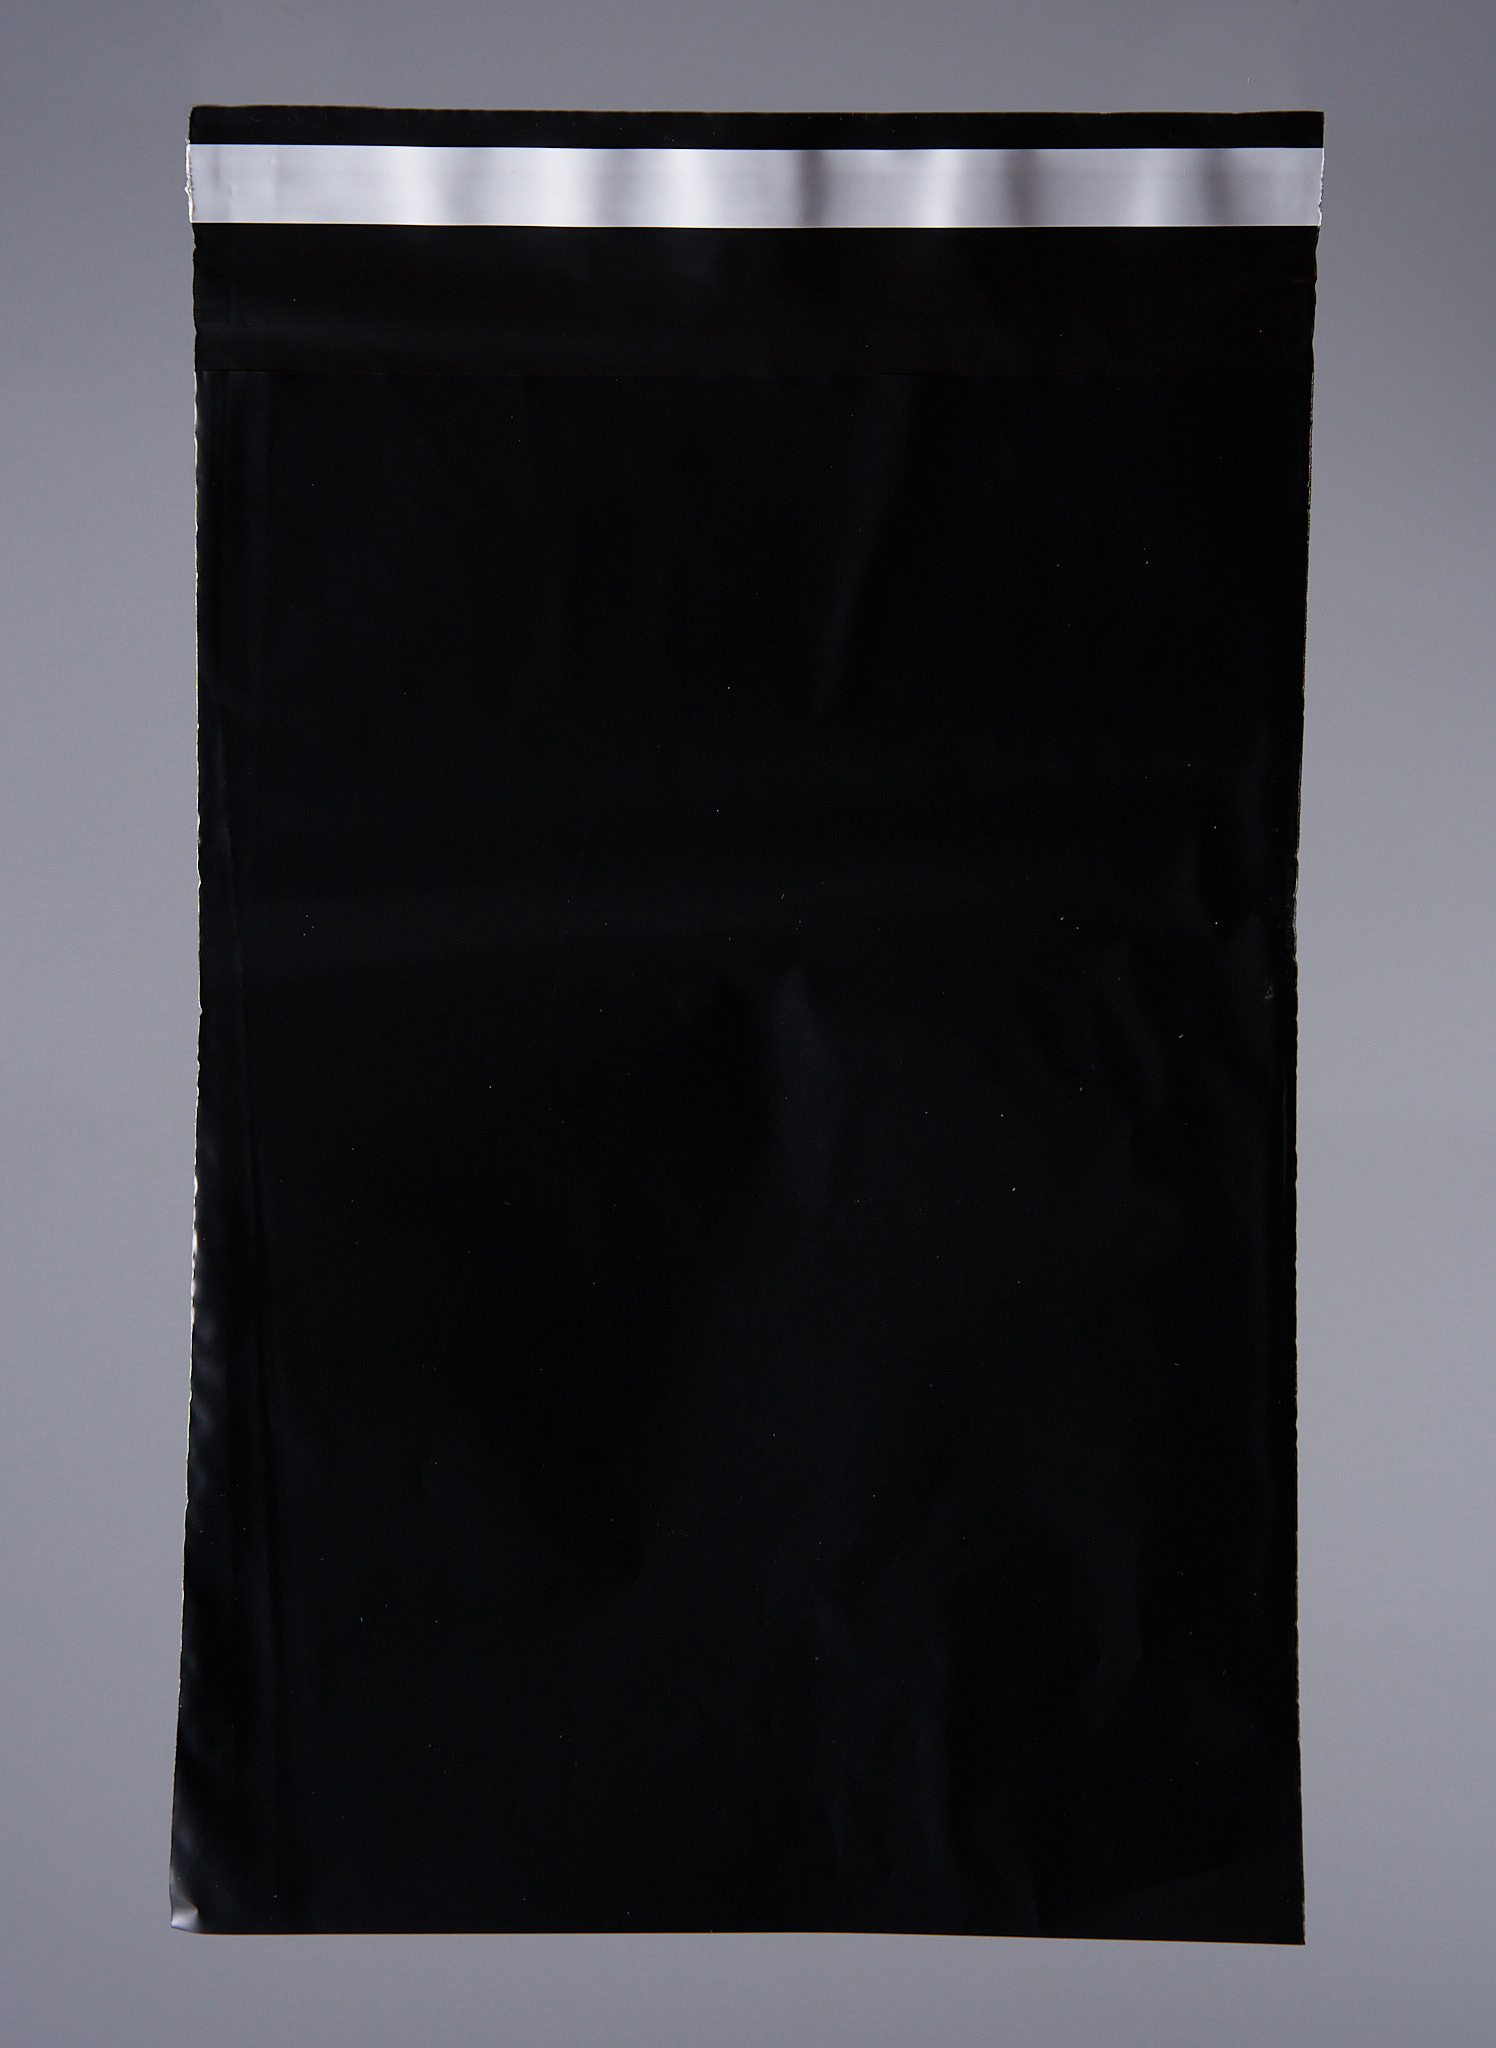 91017032 Пакет для компактного хранения 100 шт 17x24 см полиэтилен цвет черный STLM-0443000 PACK INNOVATION